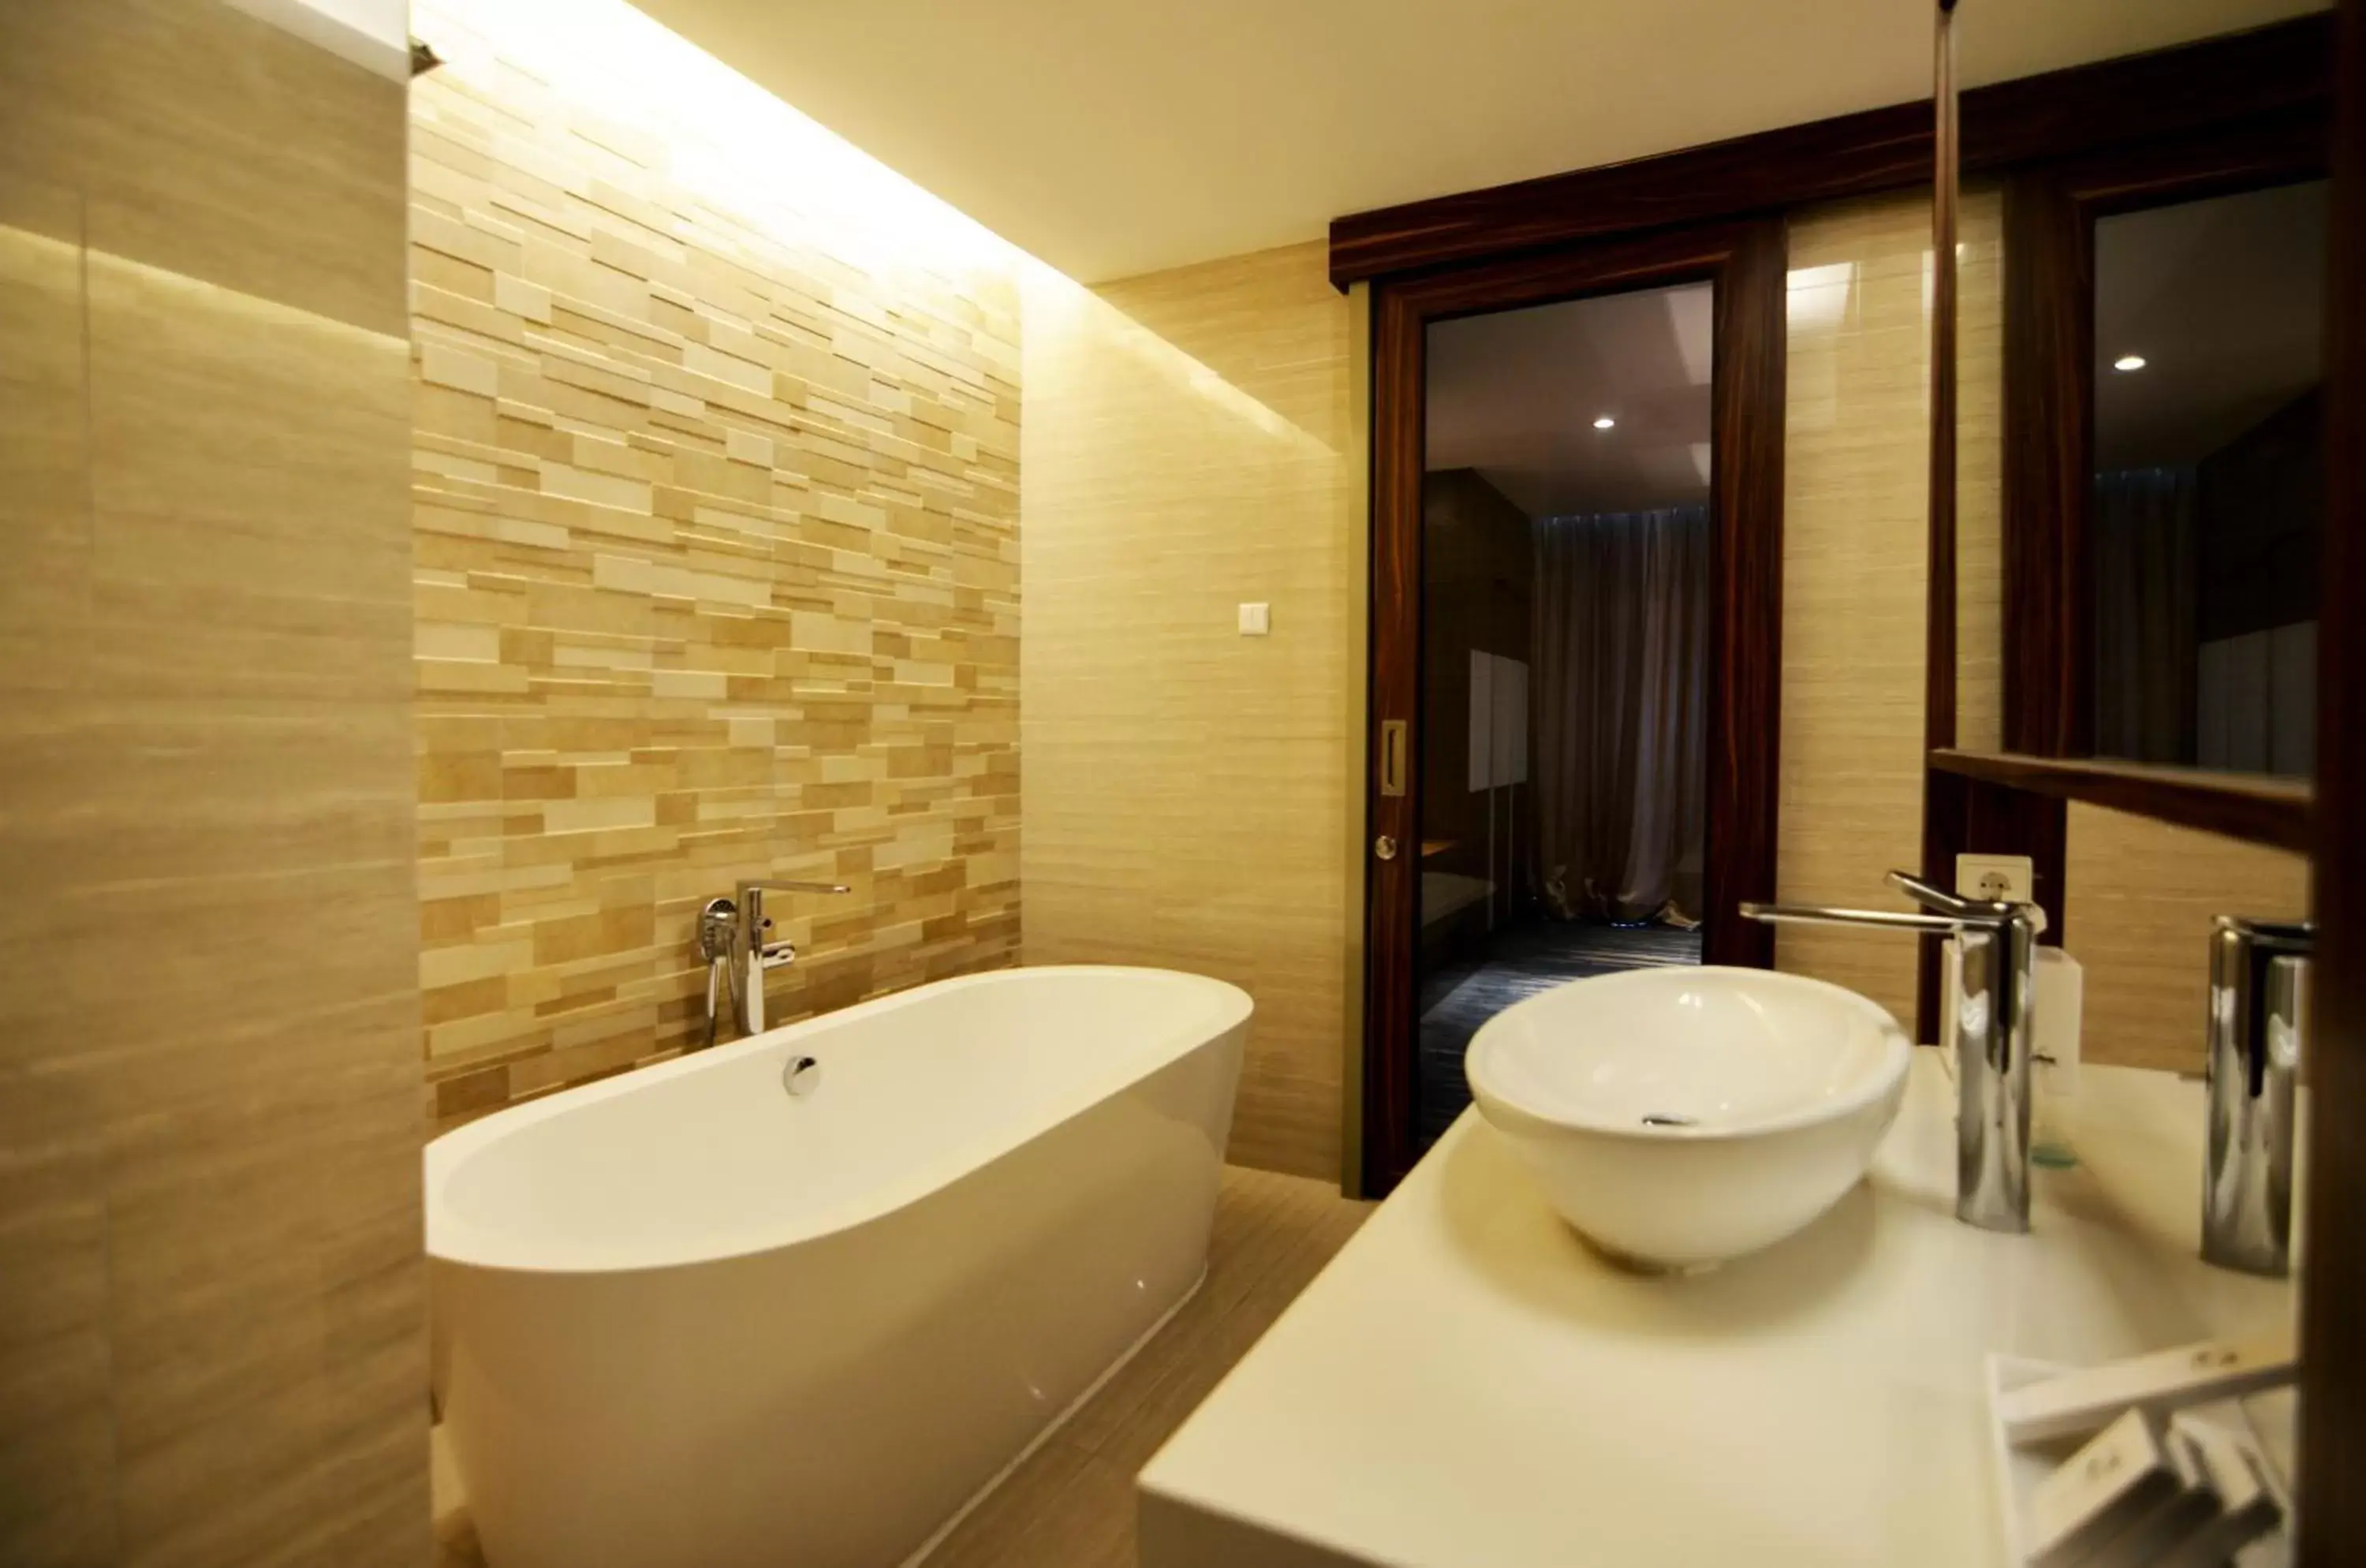 Shower, Bathroom in Swiss-Belhotel Cirebon